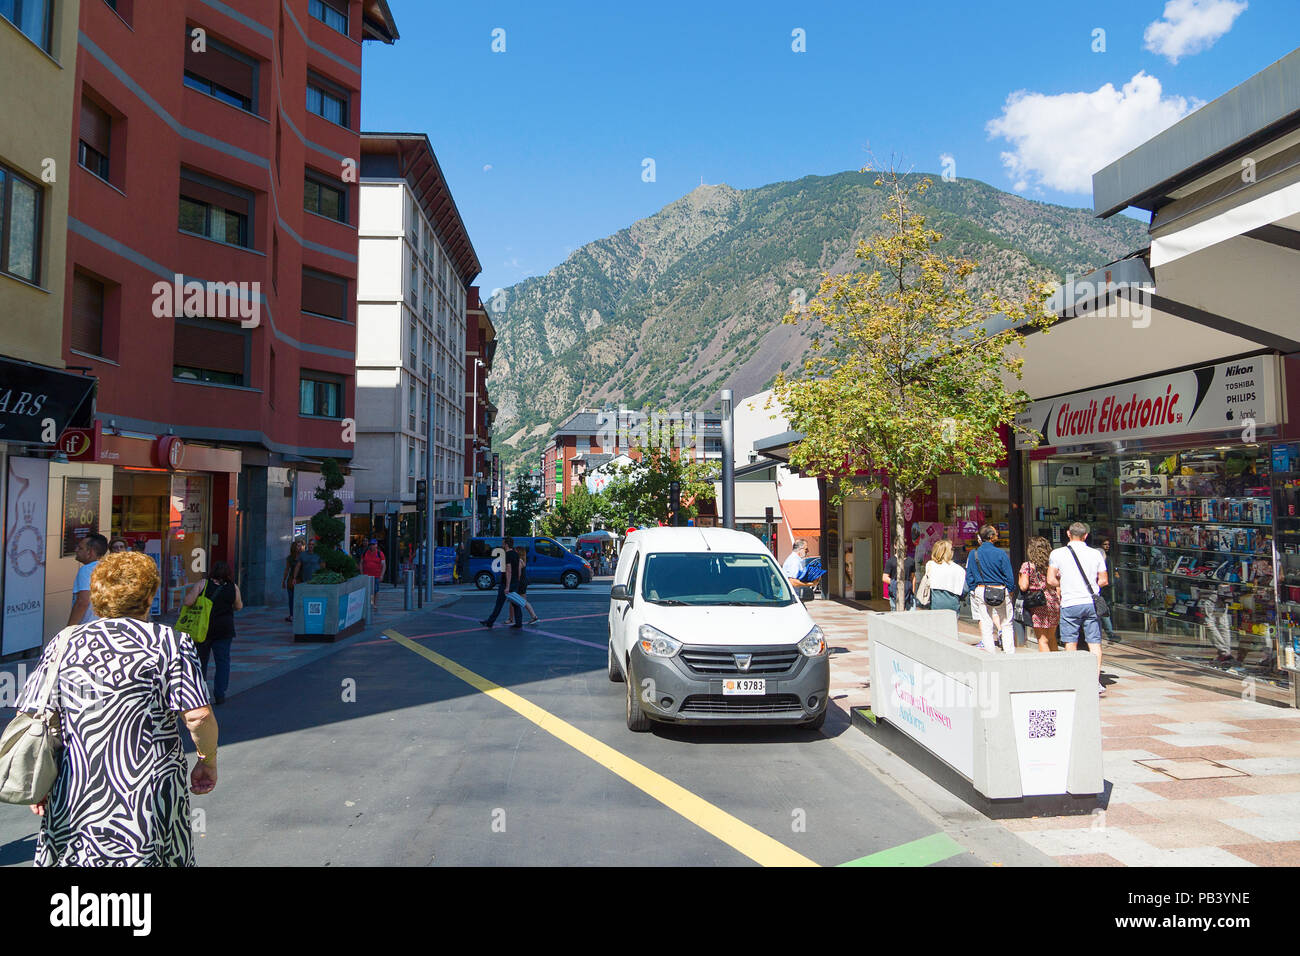 Andorra la Vella, Andorra - 14 agosto 2017: Andorra è il paese con il più piccolo commercio imposte. Si tratta di un albergo turistico e centro commerciale d'Europa. Foto Stock